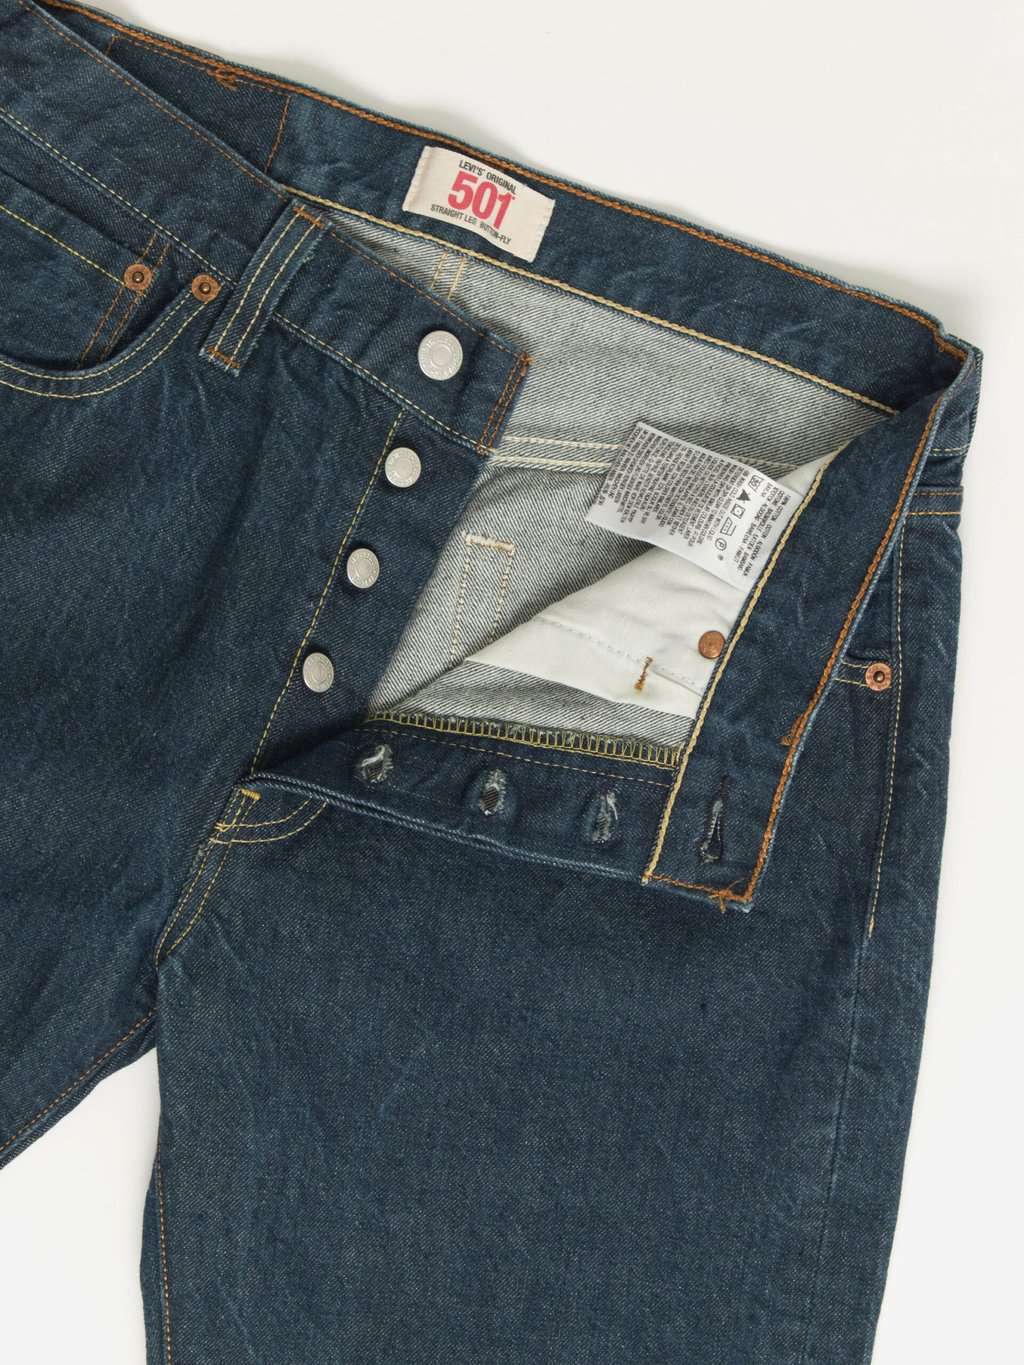 Vintage Levis 501 jeans 30 x 30 dark blue dark wash Y2K